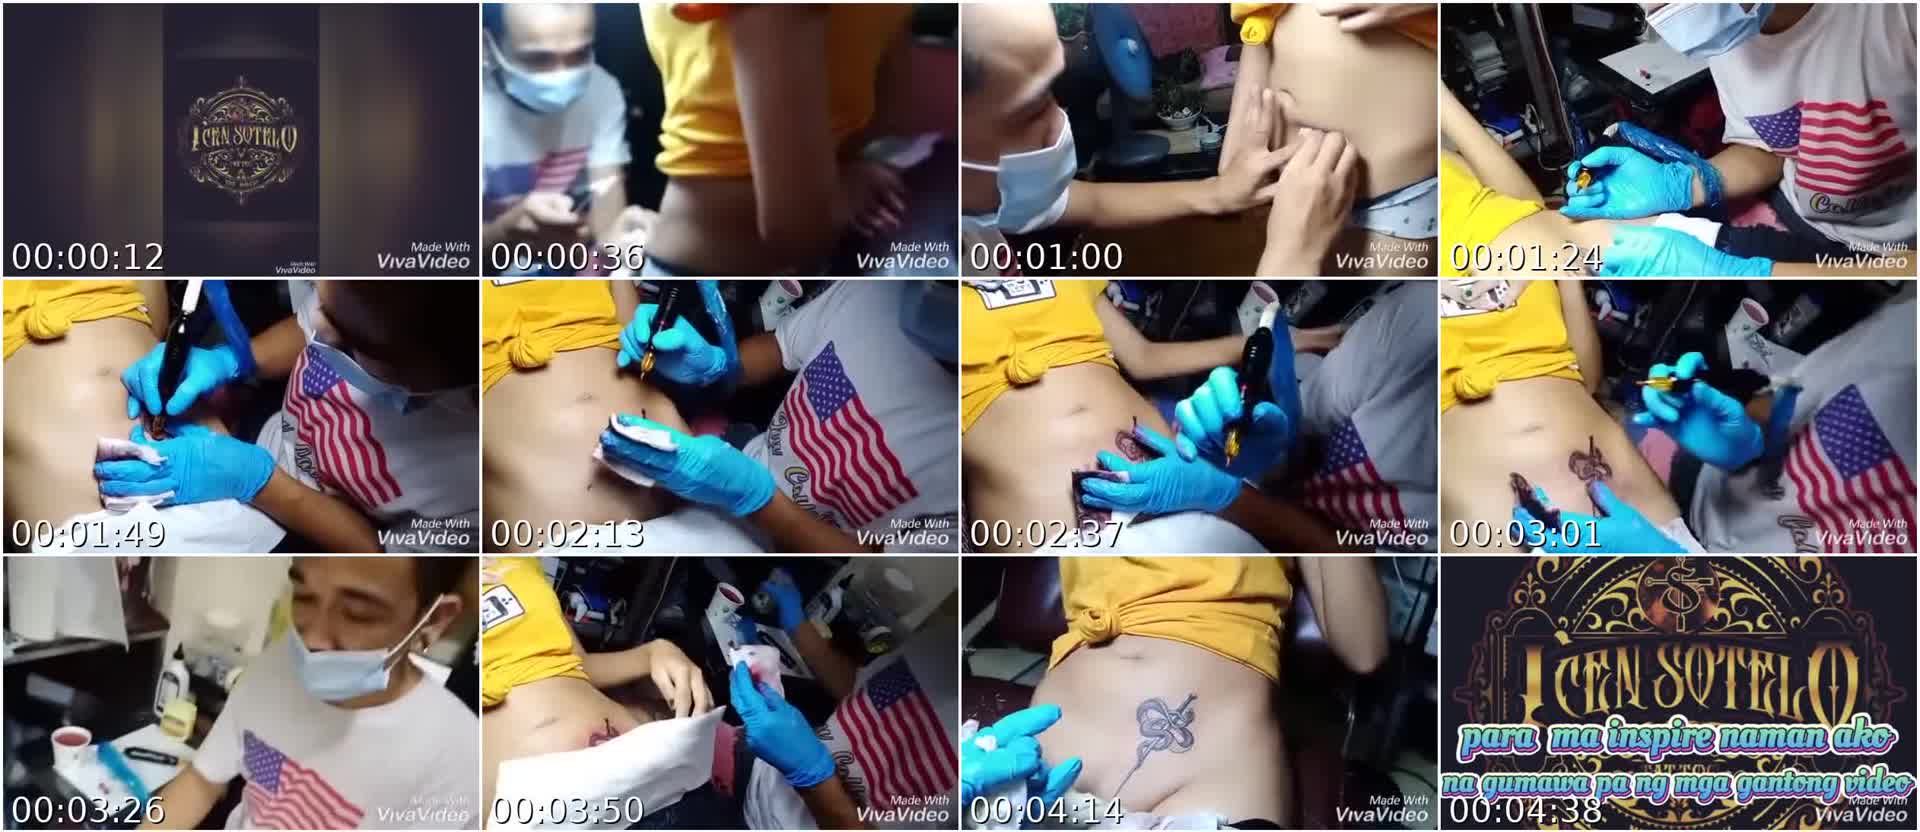 Jackpot pala maging tattoo artist ano – Libre silip sa puki at suso